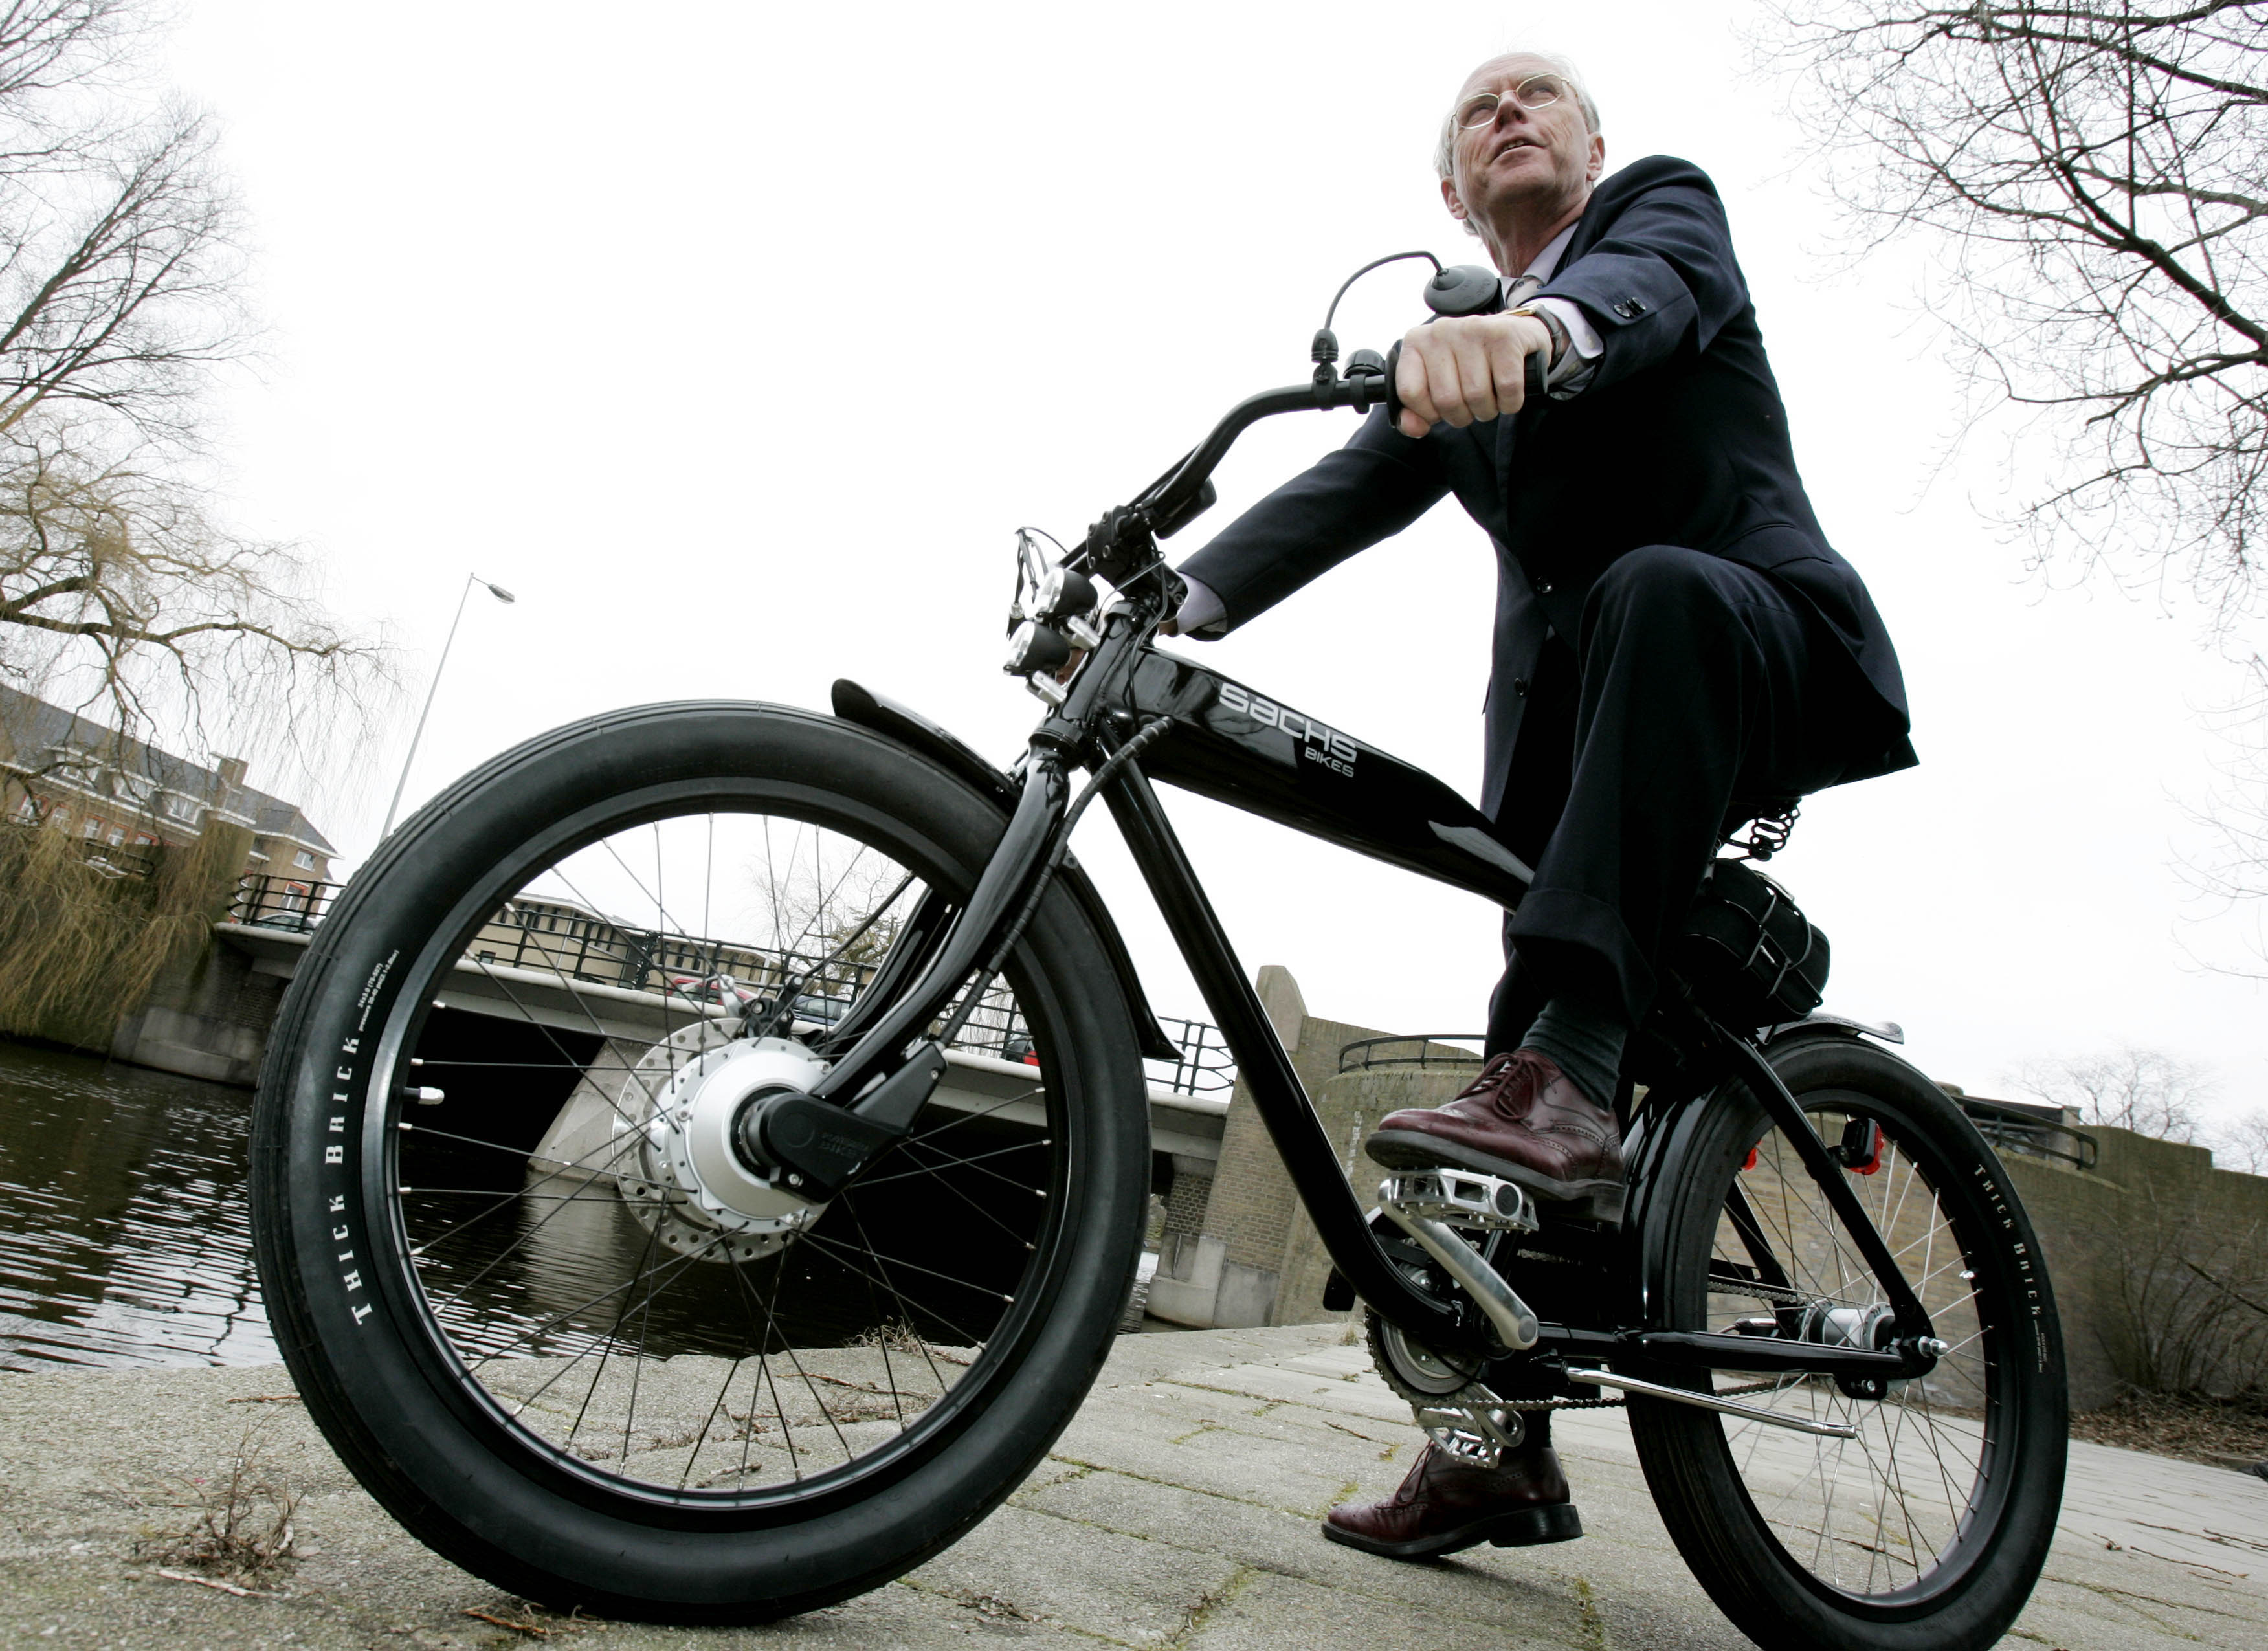 Onderzoek naar ongelukken ouderen elektrische fiets | RijschoolPro